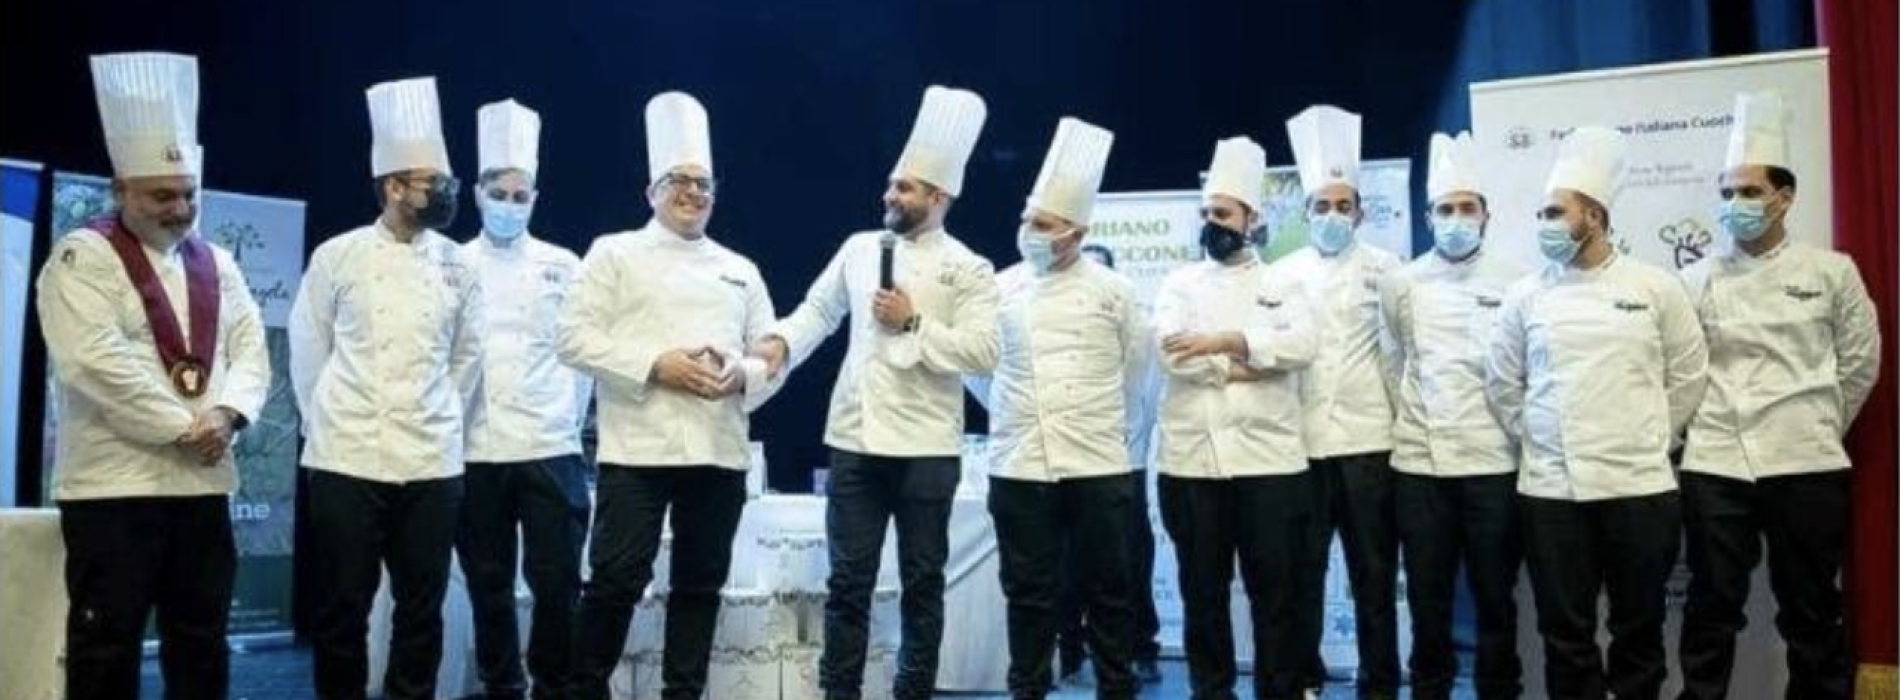 Team Junior Chef, la squadra si presenta da Dolce & Salato